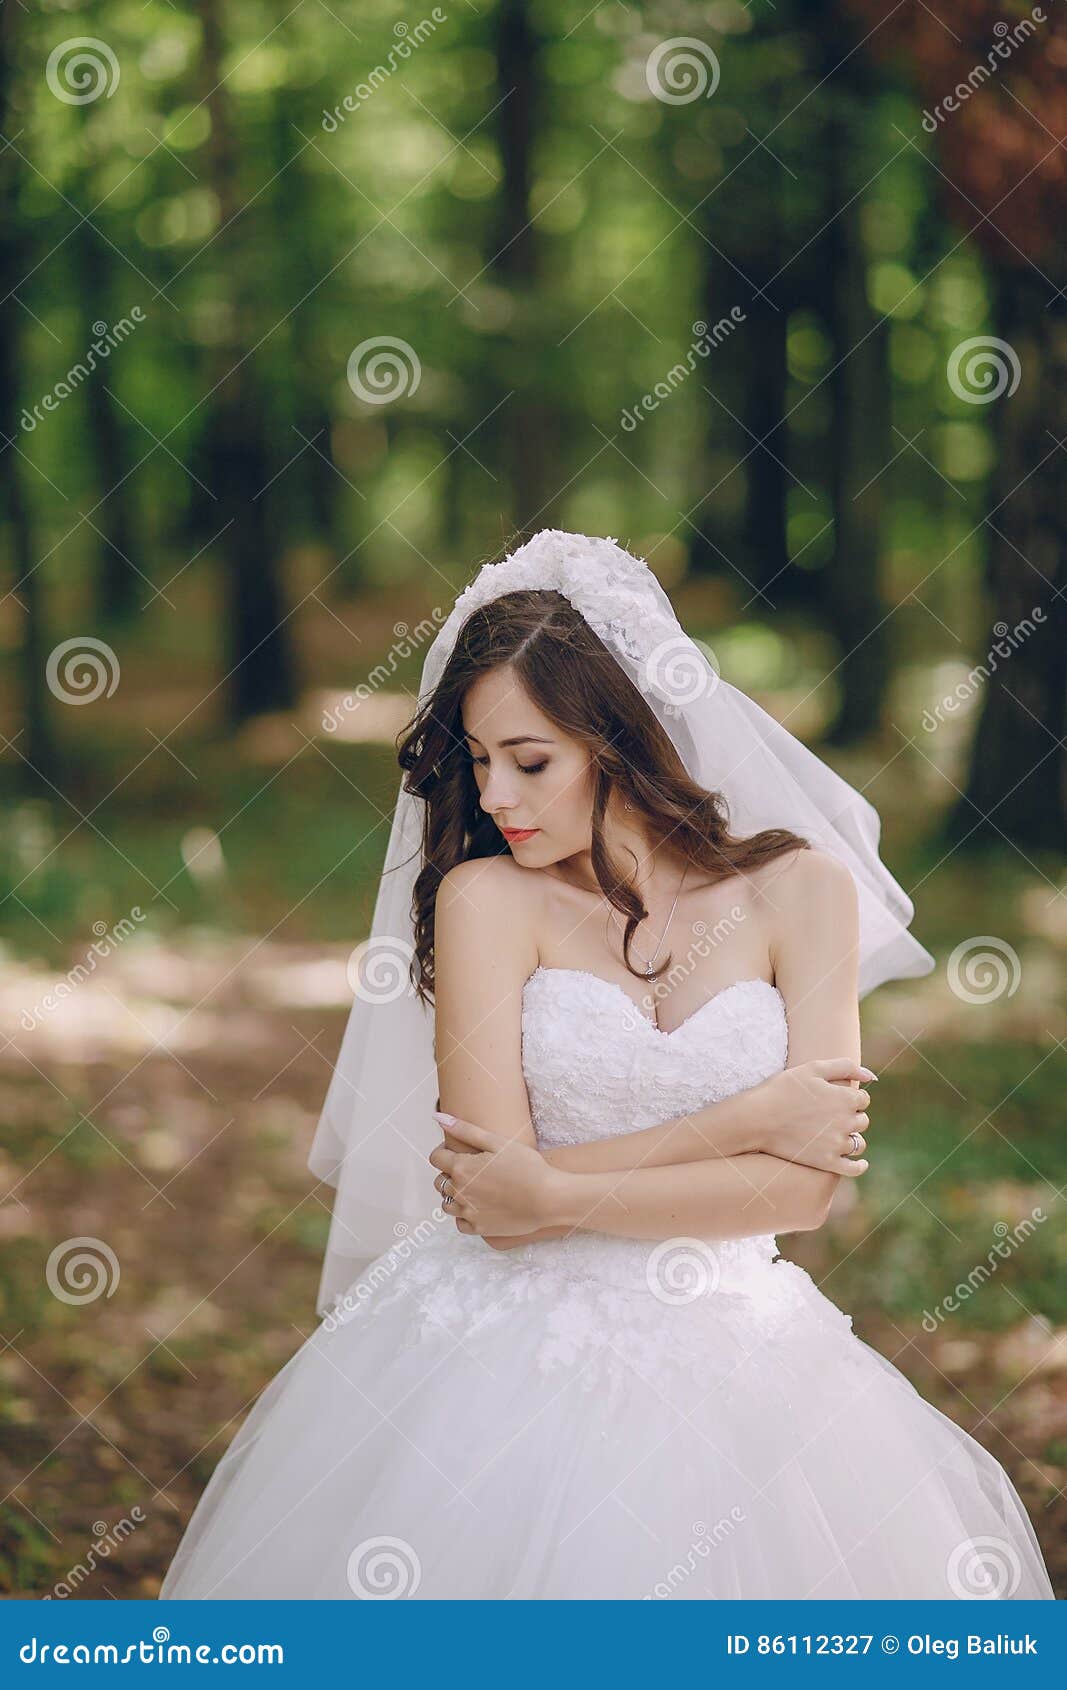 森林婚纱照素材-森林婚纱照图片-森林婚纱照素材图片下载-觅知网